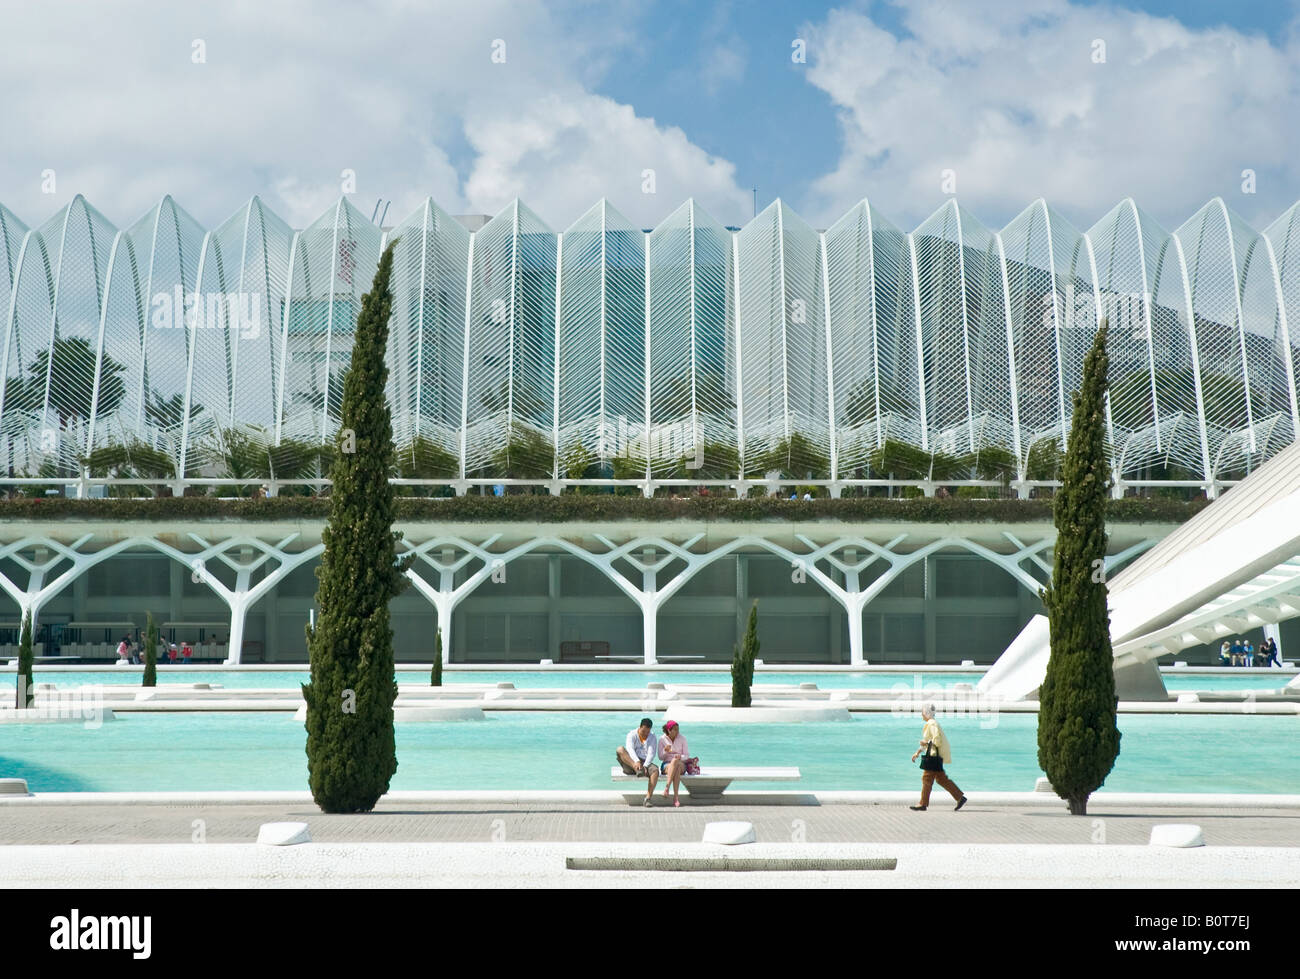 L'umbracle, Promenade et parc de stationnement est conçu par l'architecte Santiago Calatrava,Valence Espagne mai 2008 Banque D'Images